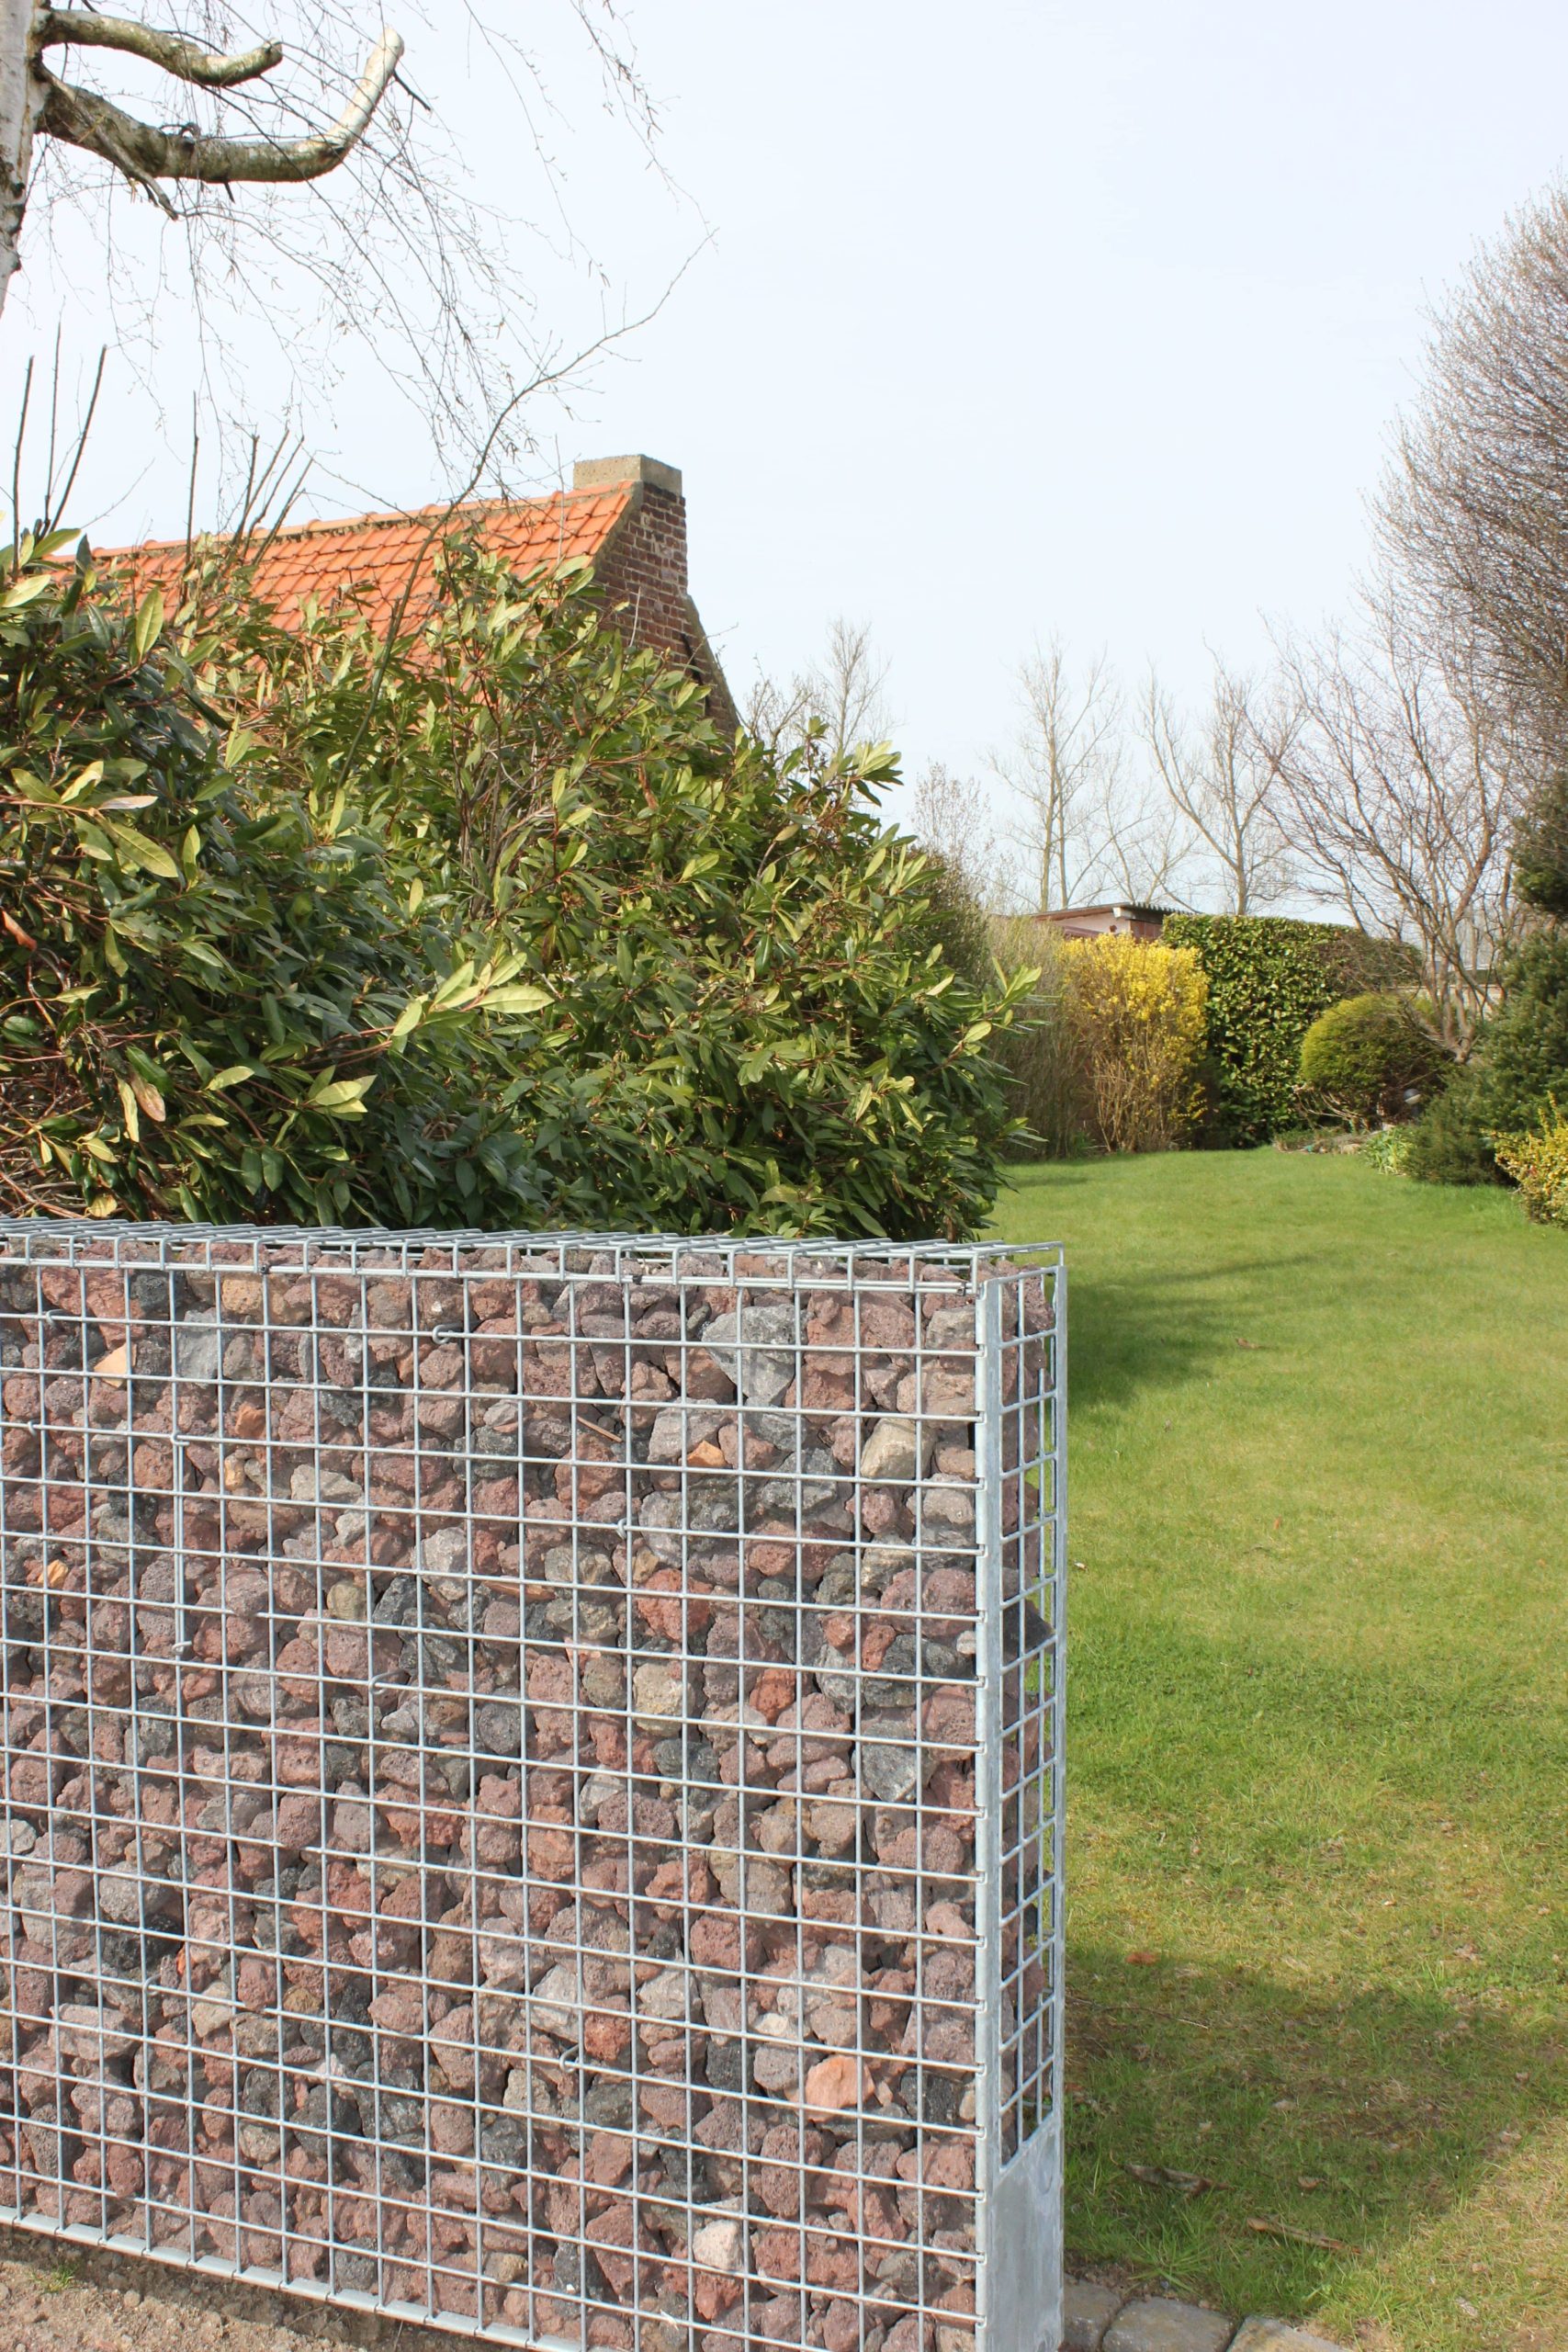 Afsluiting tuin met steenkorven ECCOfence KIT 150 cm hoog gevuld met Breuksteen Belgisch Rood - Realisatie Jatu.be webshop steenkorven, breukstenen en sierkeien